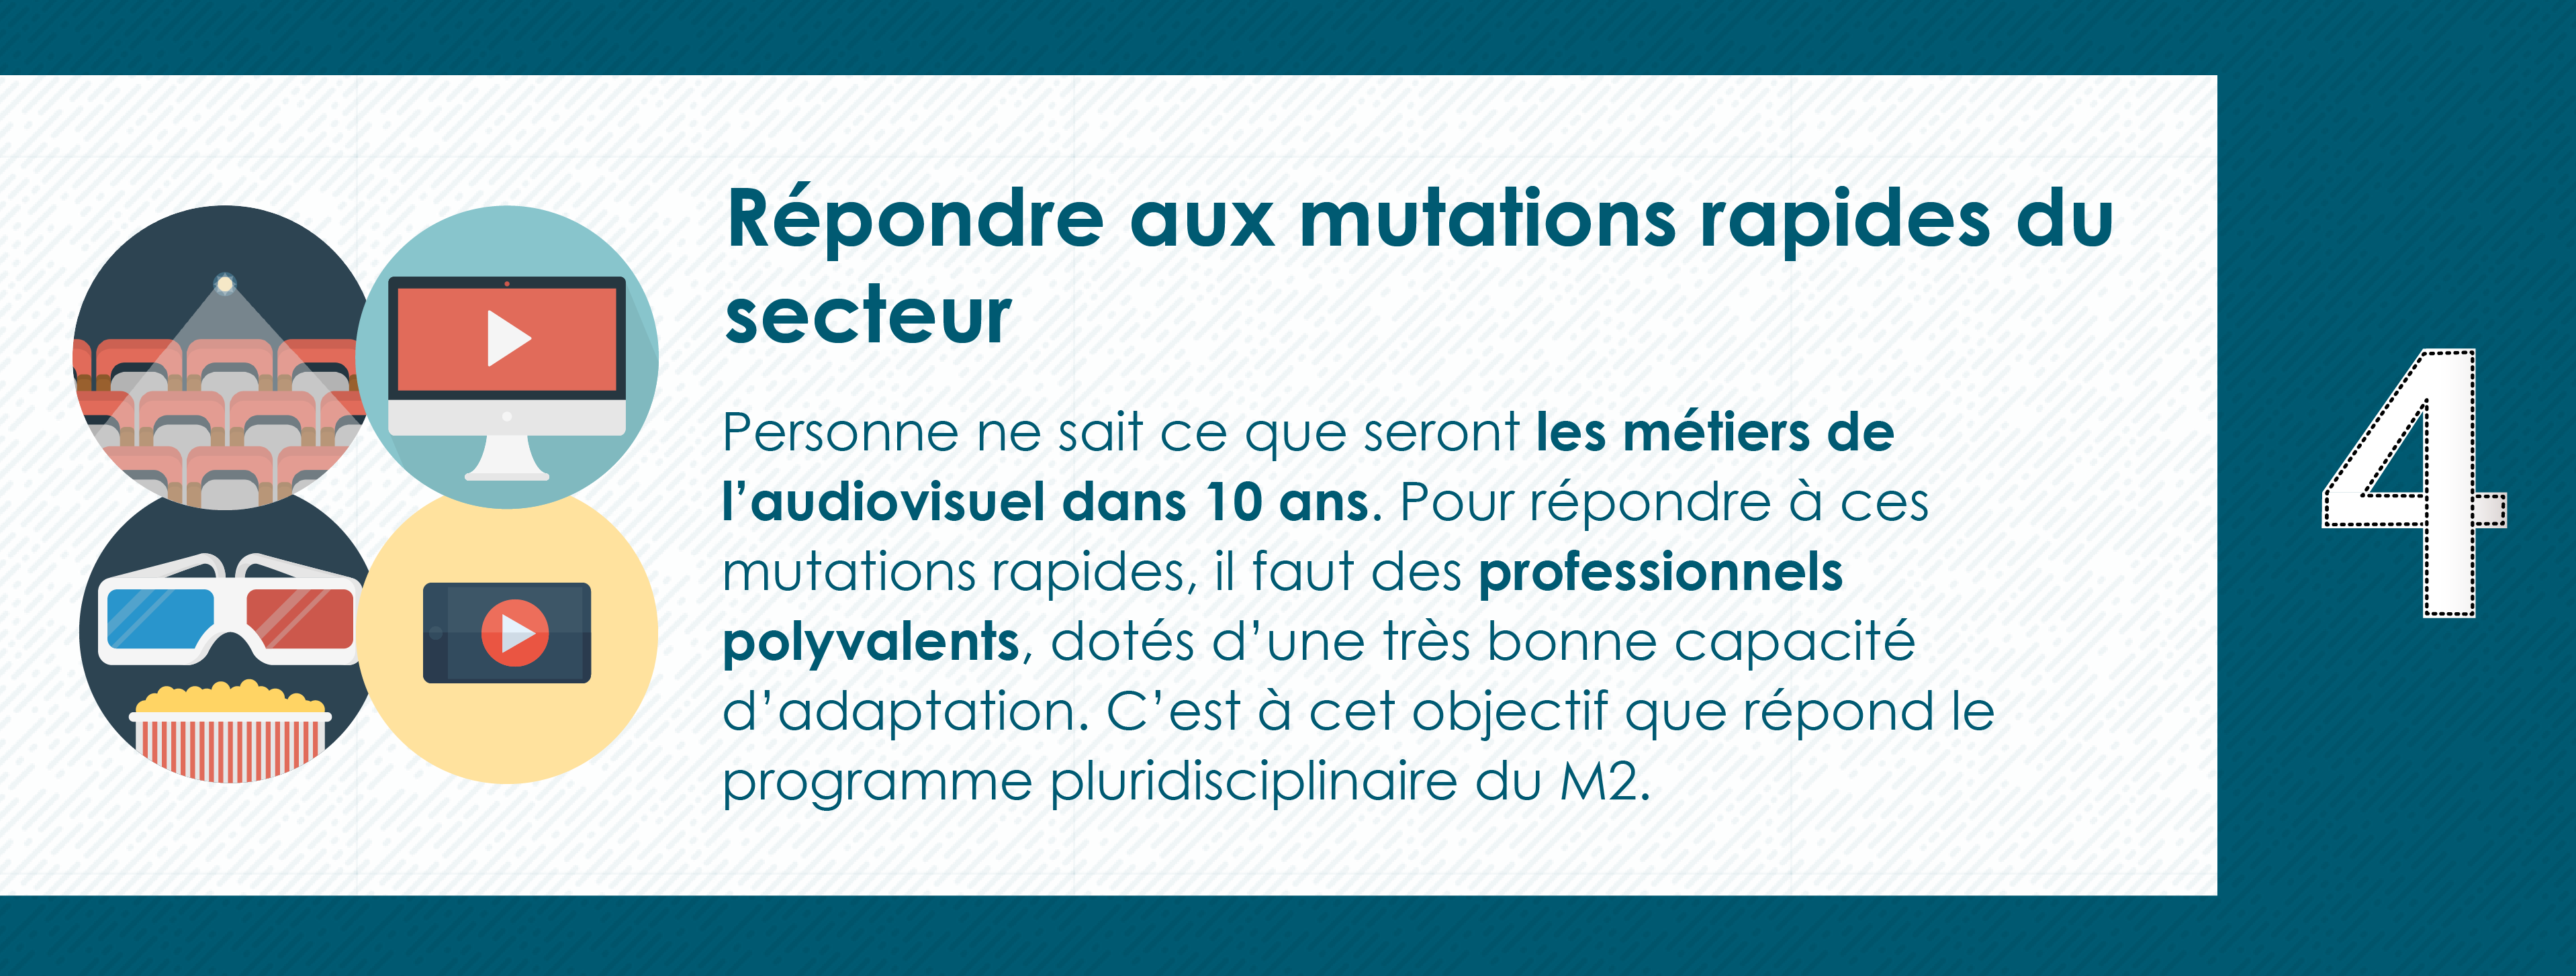 Pourquoi rejoindre le Master 2 Industrie Audiovisuelle de Paris 8 - Préparation aux mutations rapides du secteur